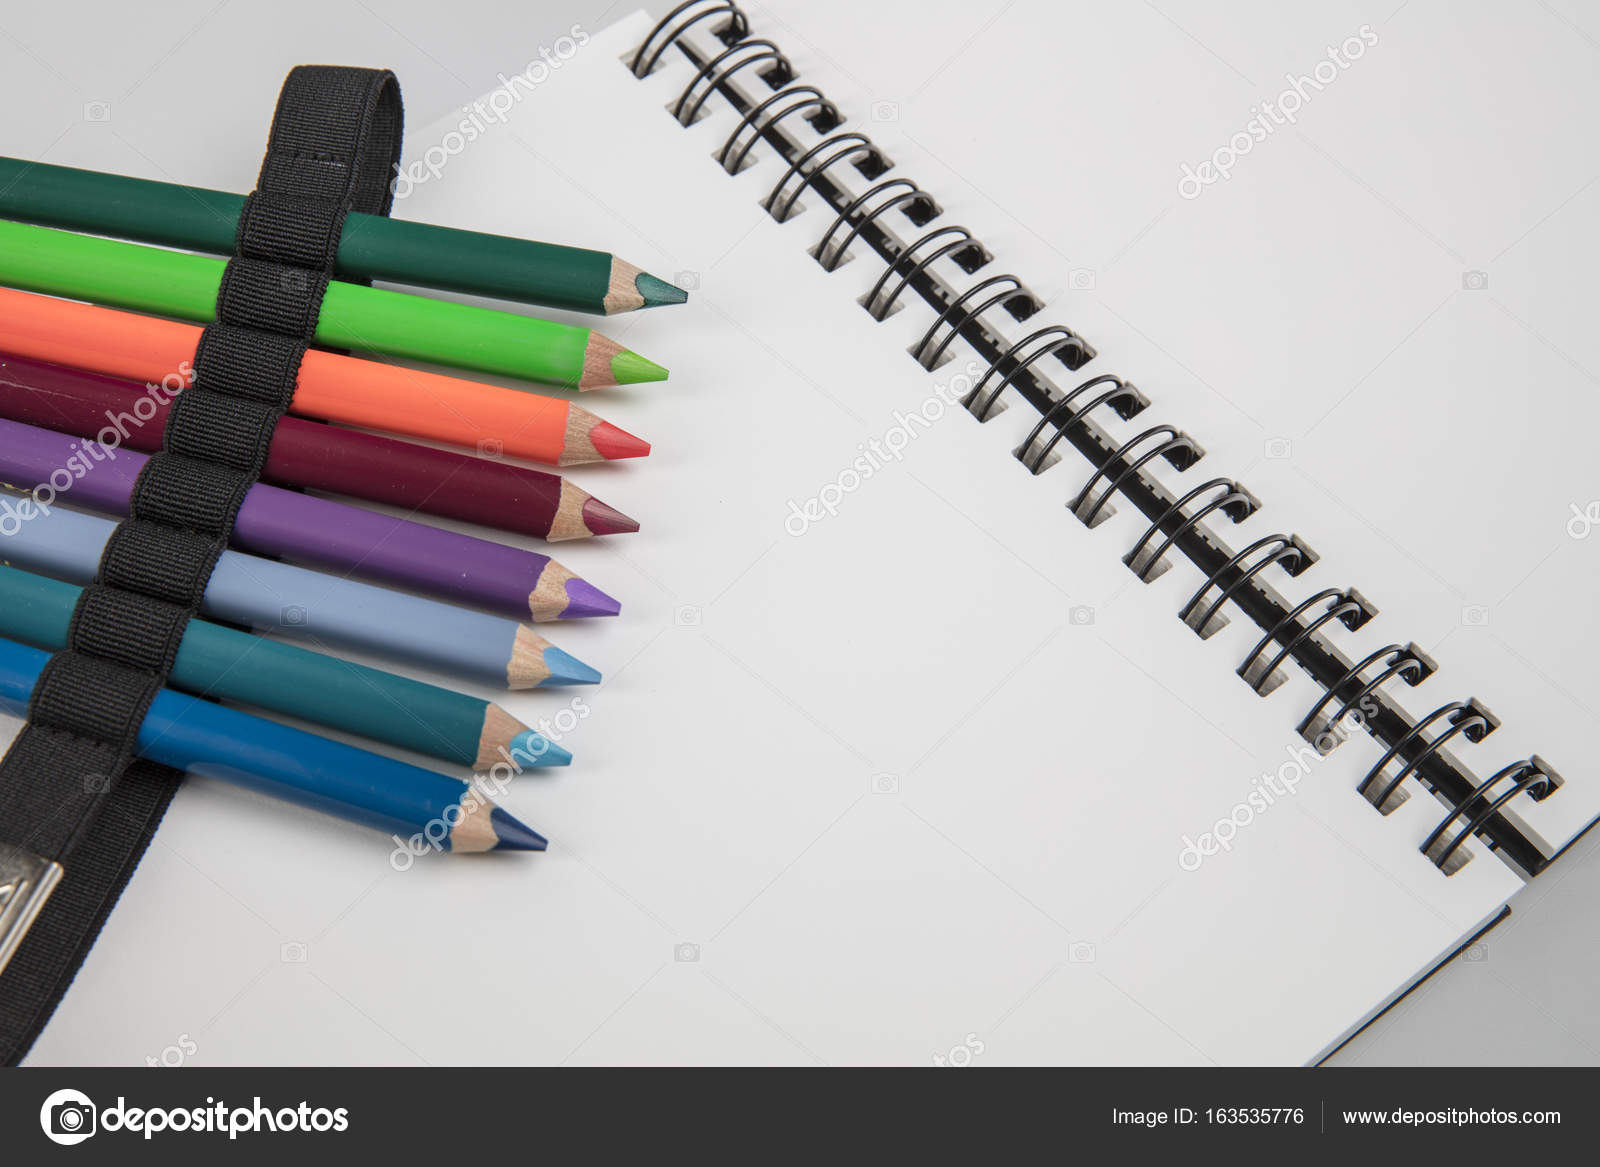 https://st3.depositphotos.com/1928083/16353/i/1600/depositphotos_163535776-stock-photo-sketchbook-and-color-pencils.jpg